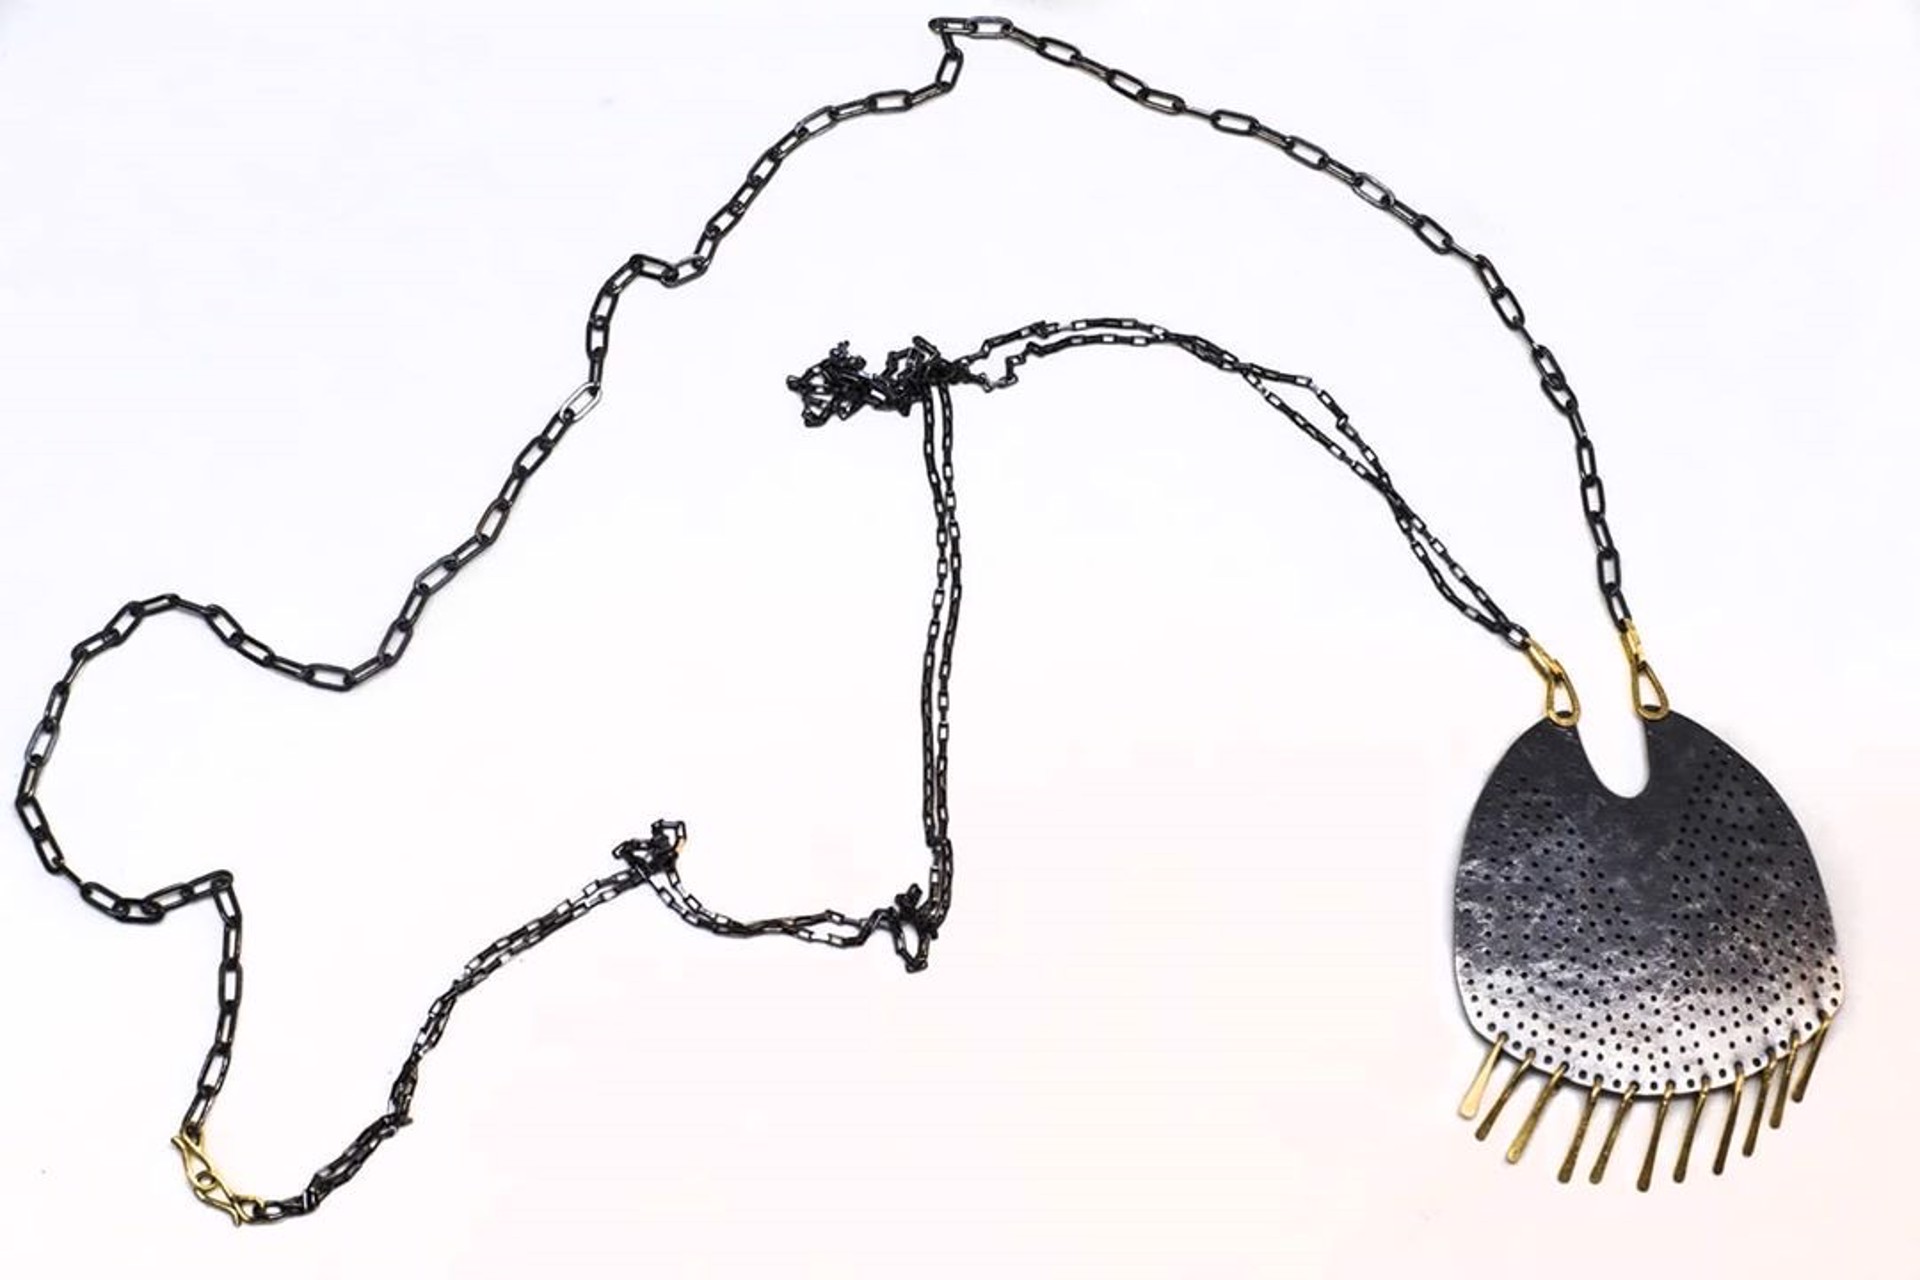 Fringed Gibbous Necklace by Leia Zumbro